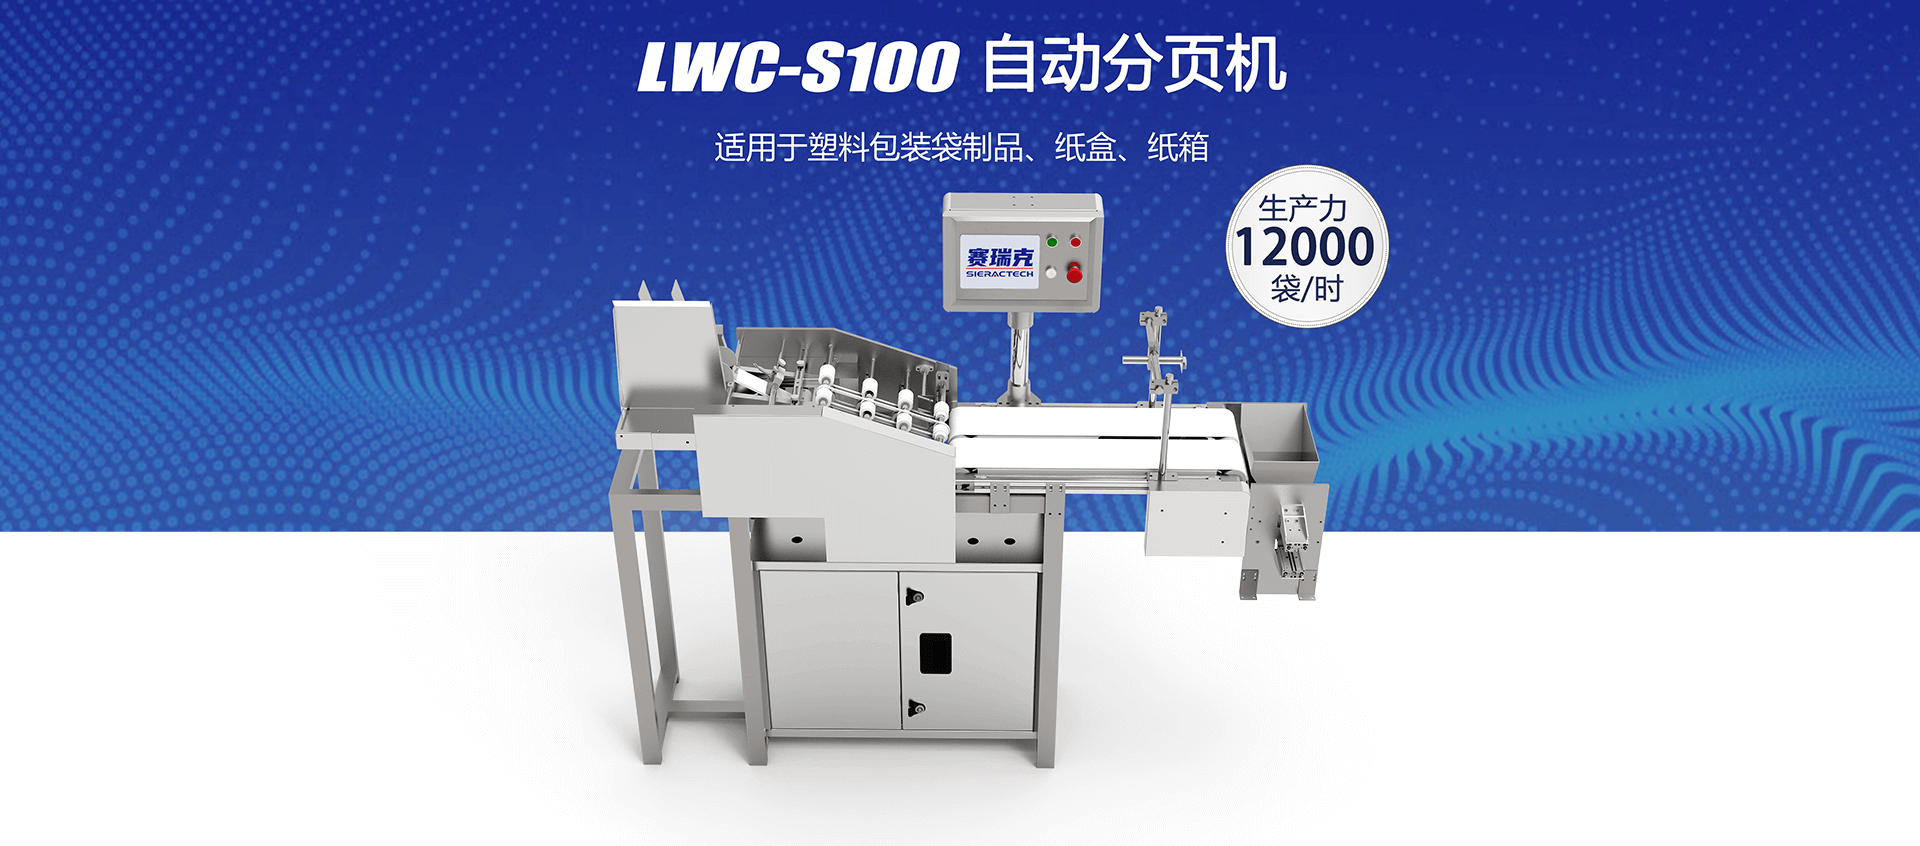 LWC-S100自动分页机